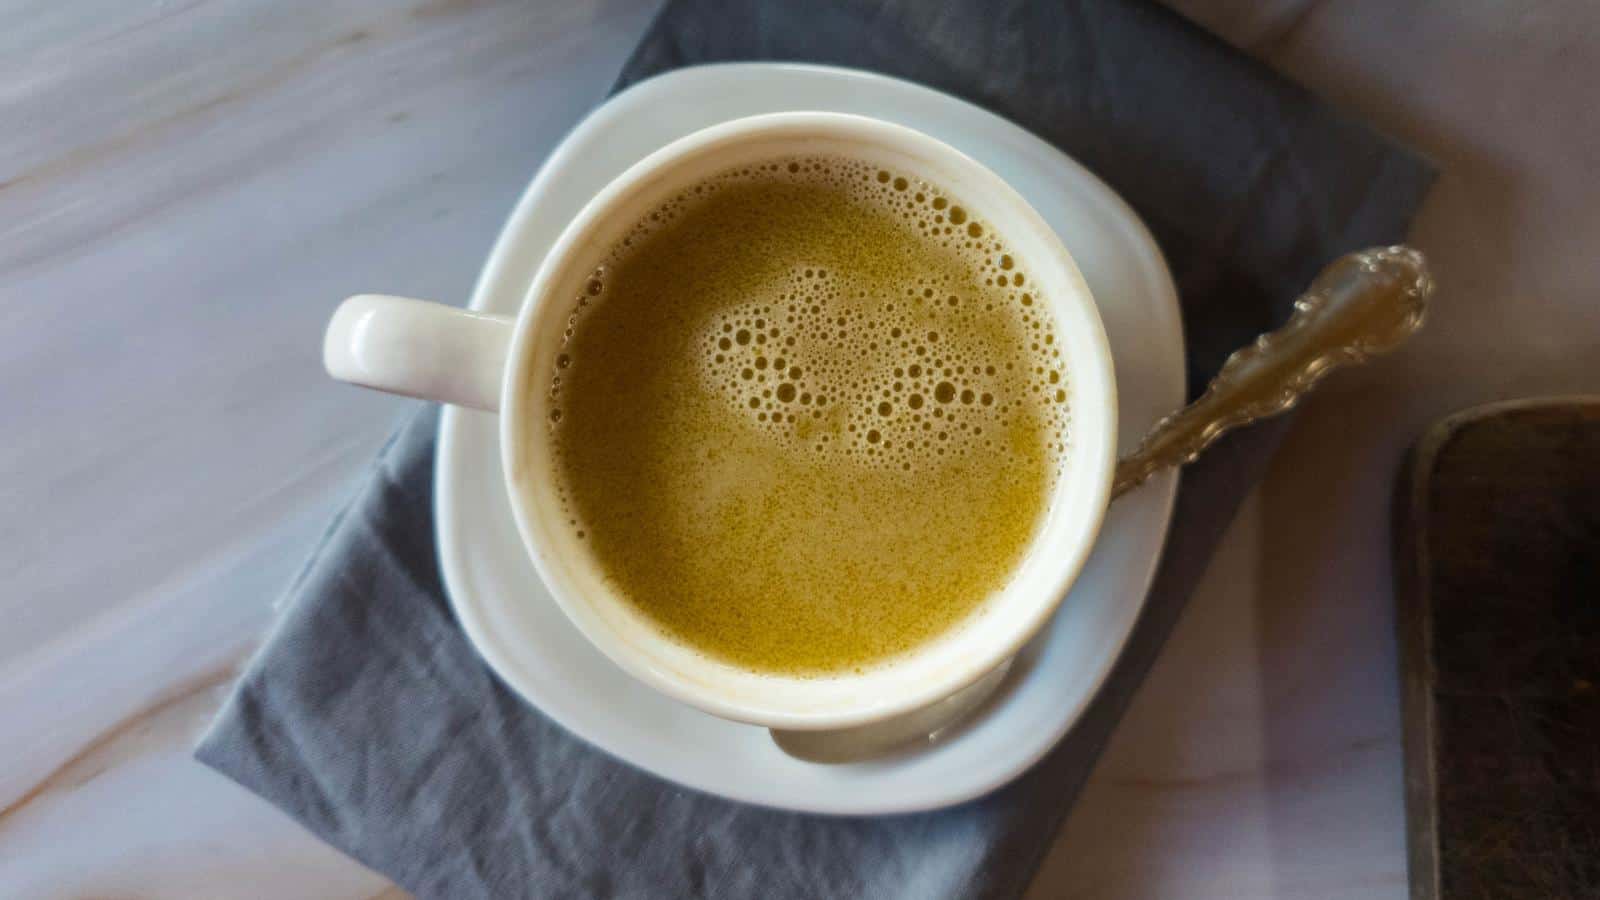 Tibetan Butter Tea Recipe in mug on saucer.